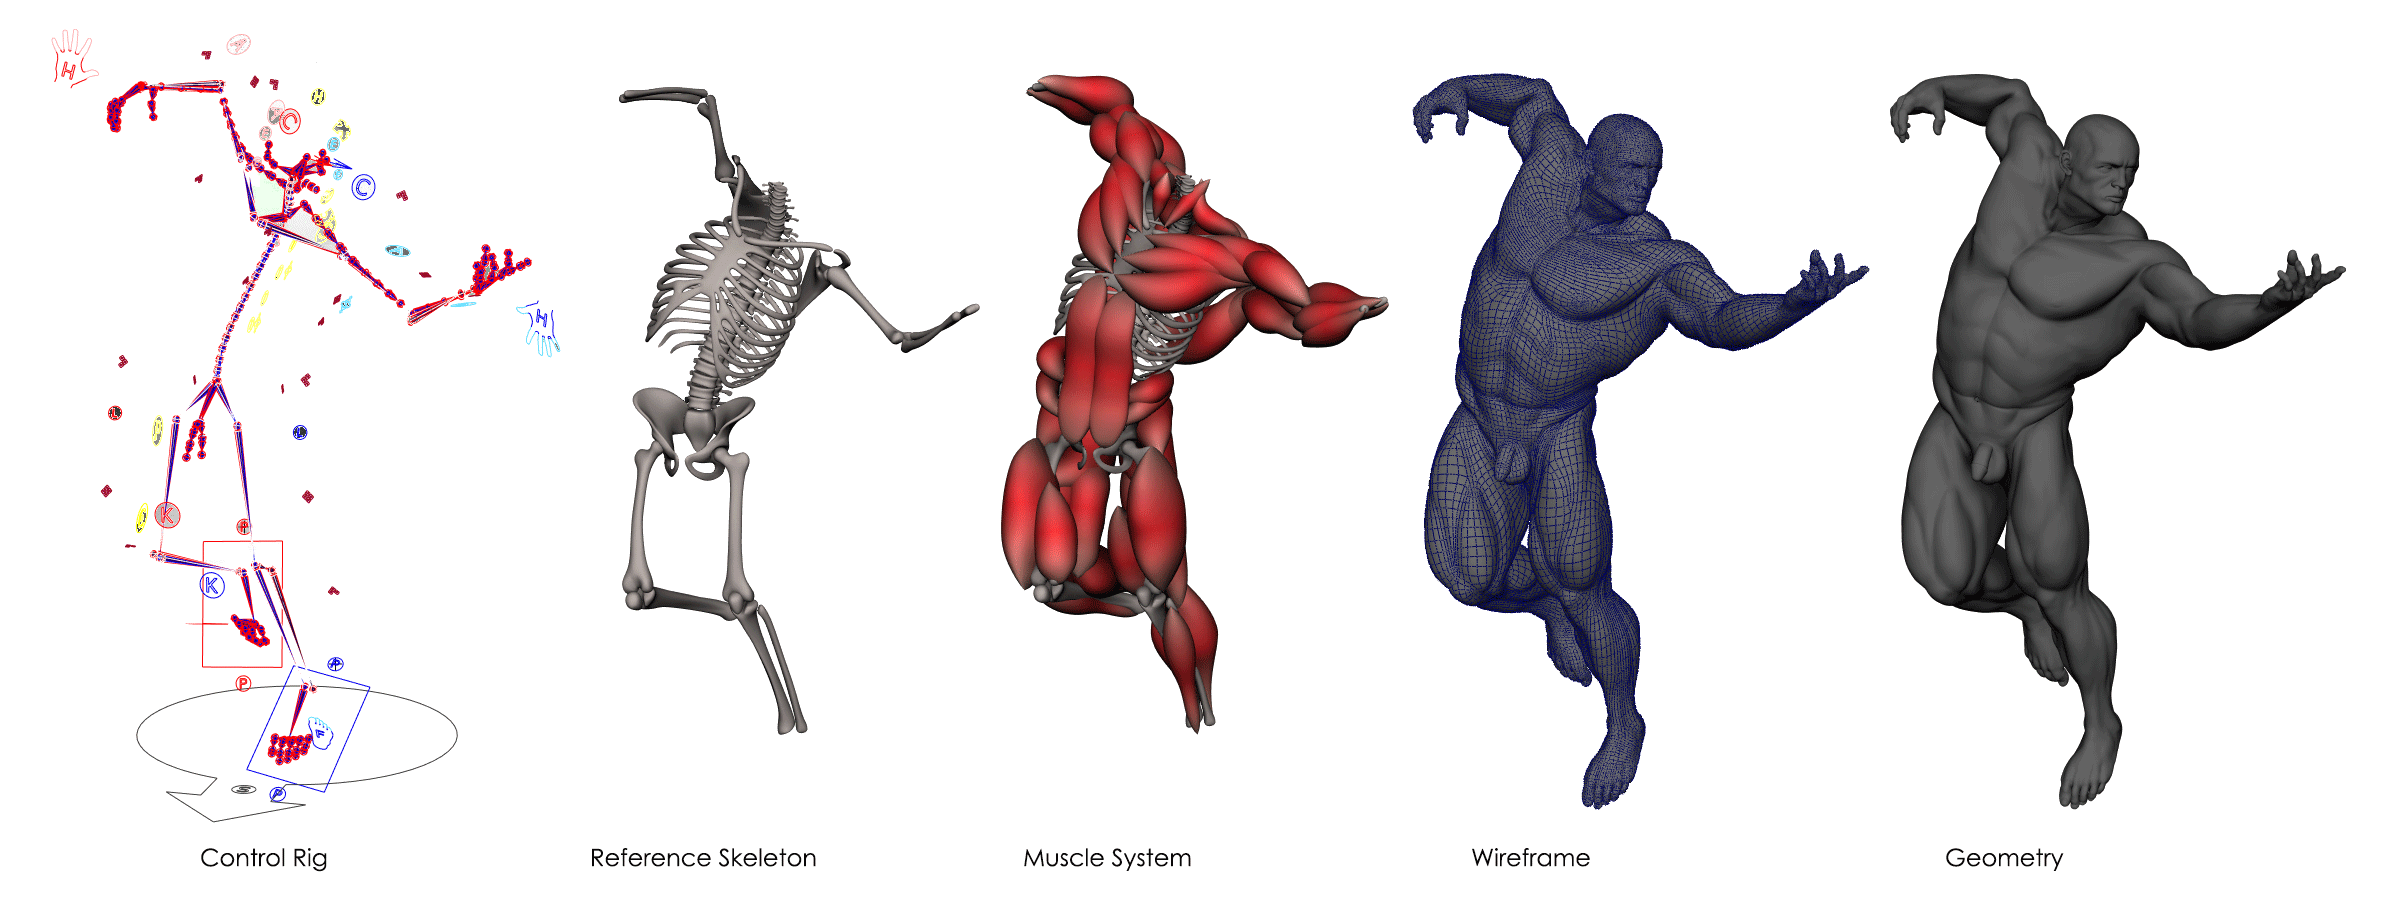 Experiened 3D Modeler, Digital Sculptor, Rigger, Texture Arist